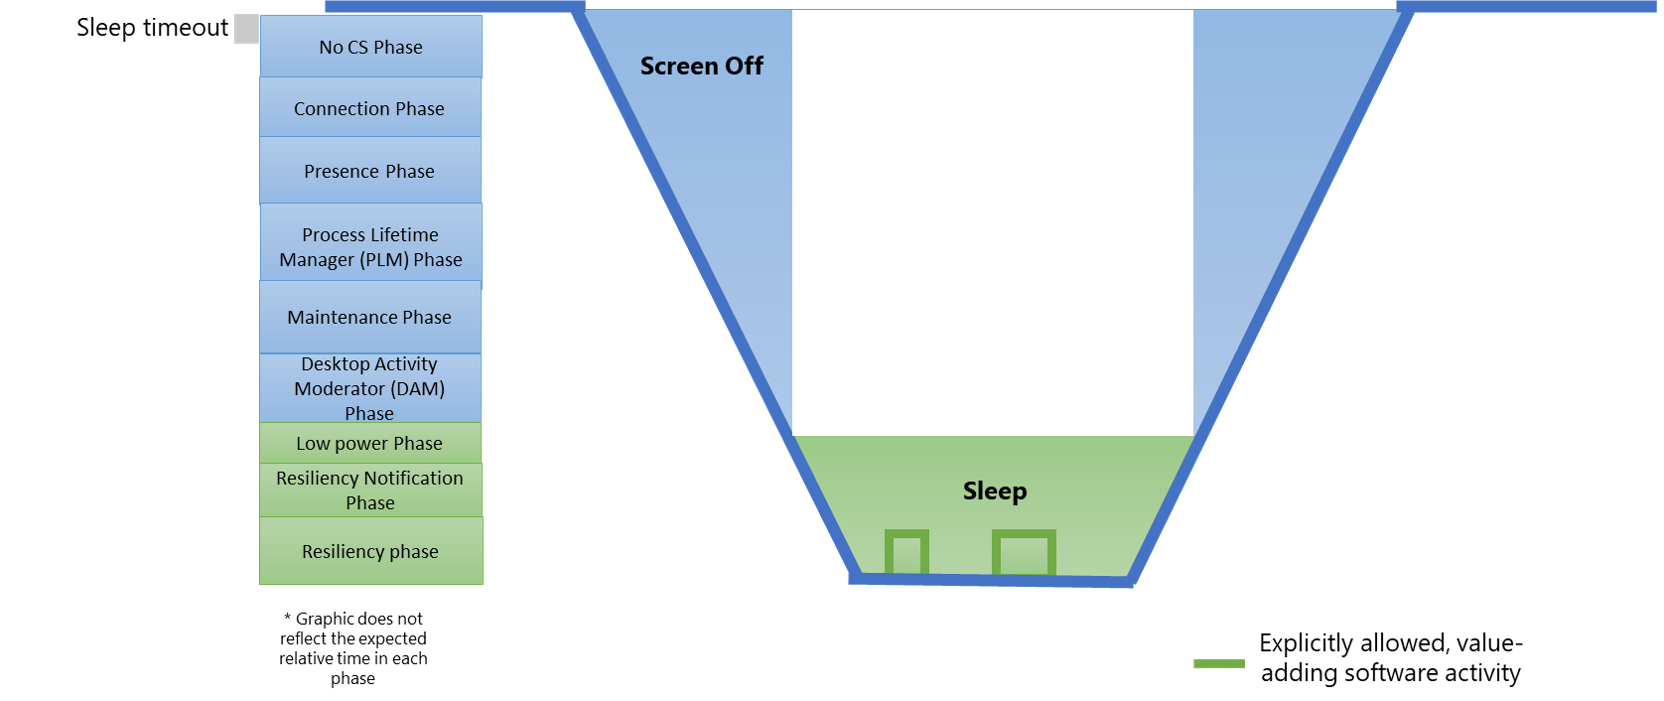 Figura 1: Diagrama donde se ven los estados de modo de espera moderno del sistema y su relación con las fases de software